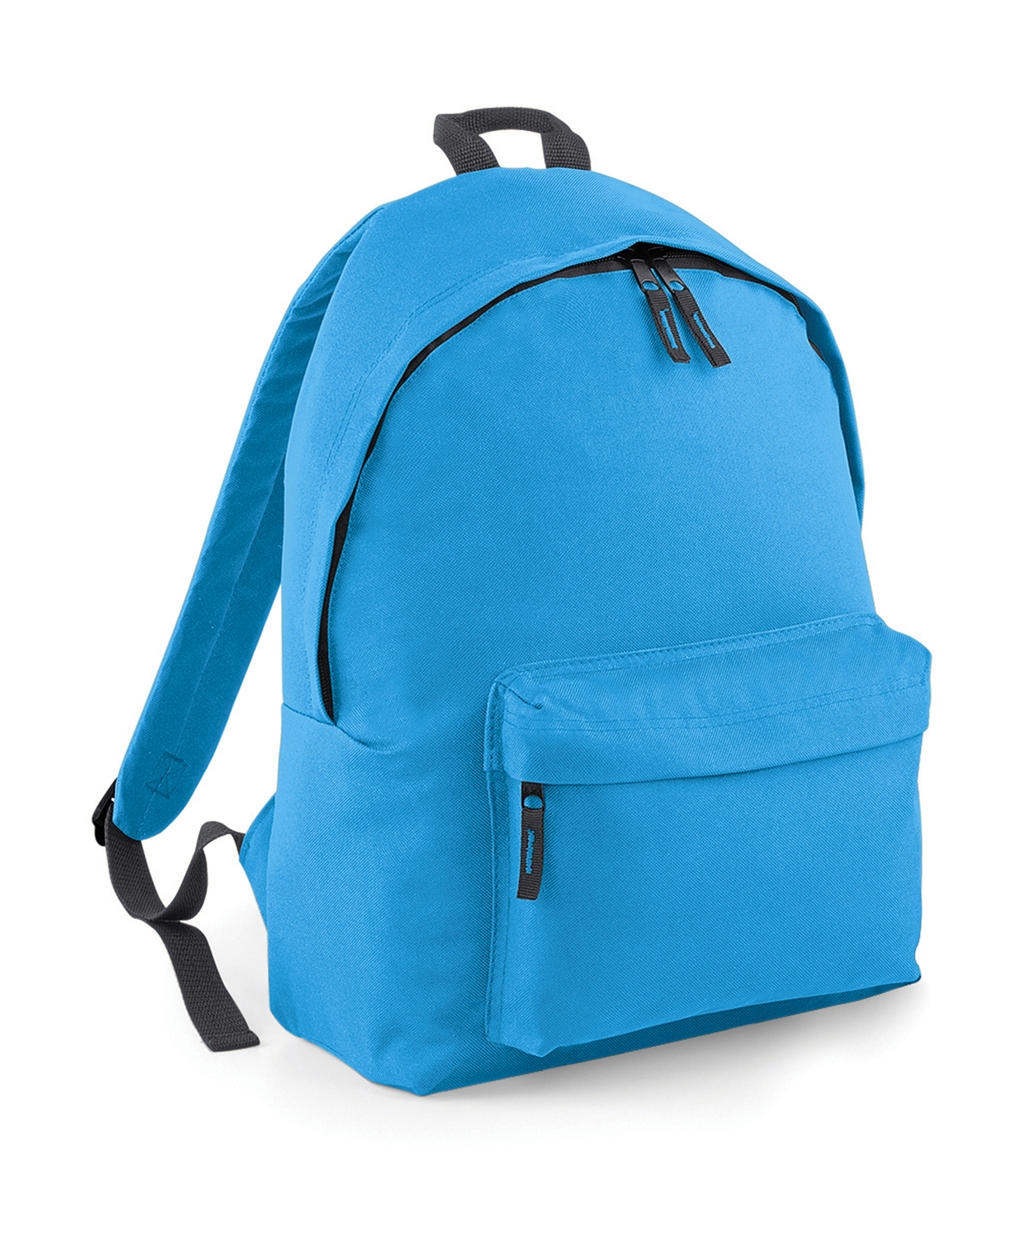 Fashion Backpack Surf Blue/Graphite Grey Bleu